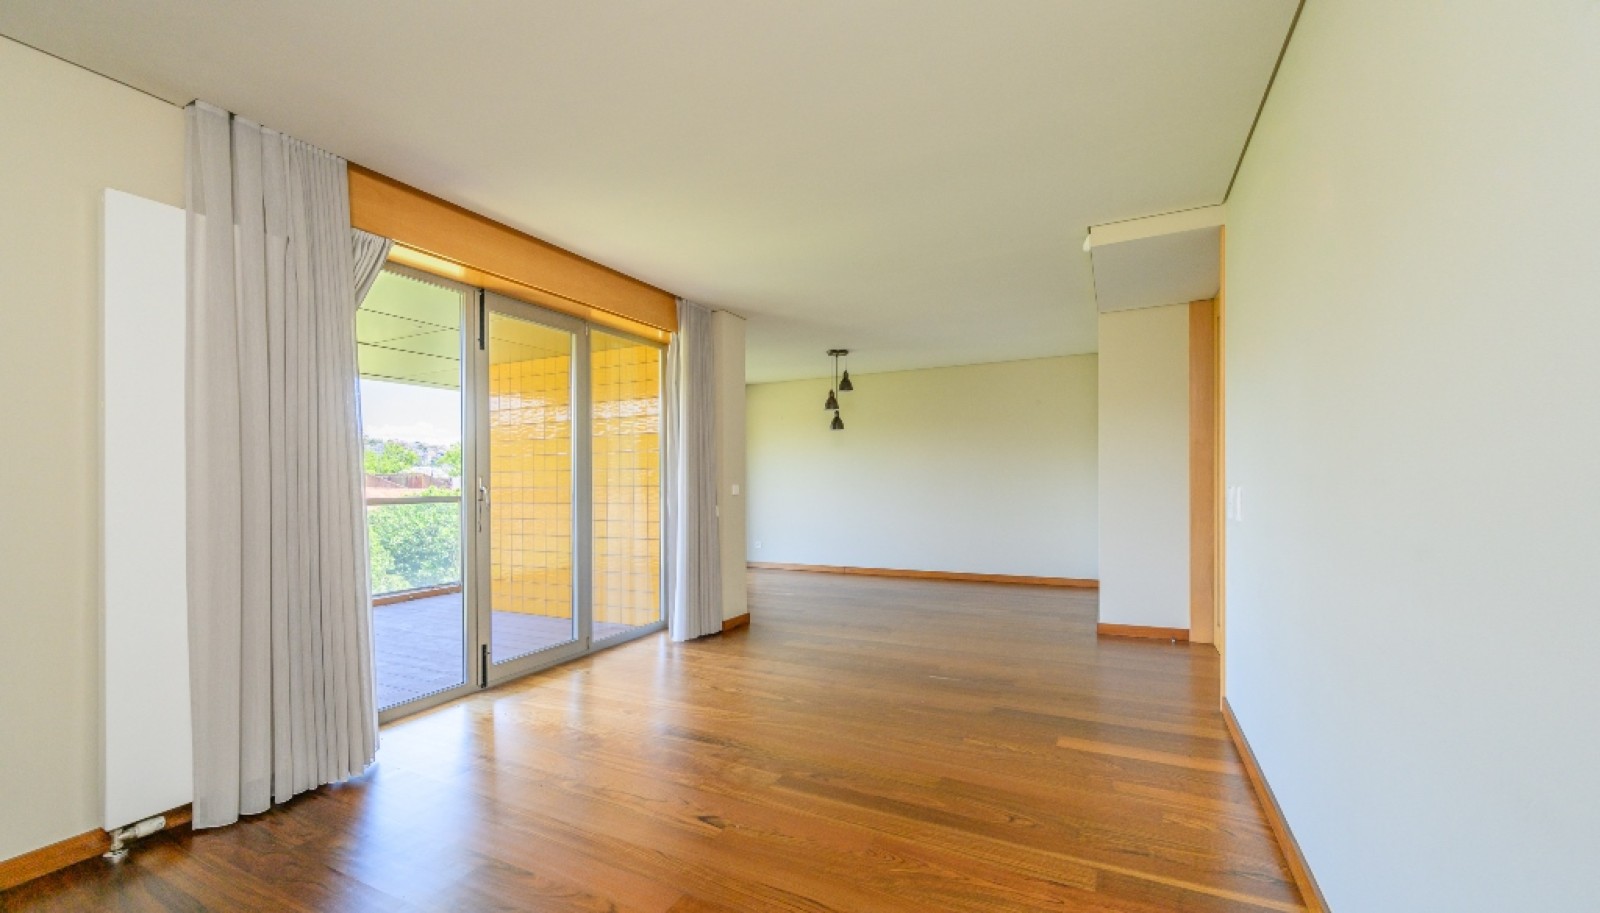 Apartamento moderno com varanda e vistas rio, para venda, no Porto_263953